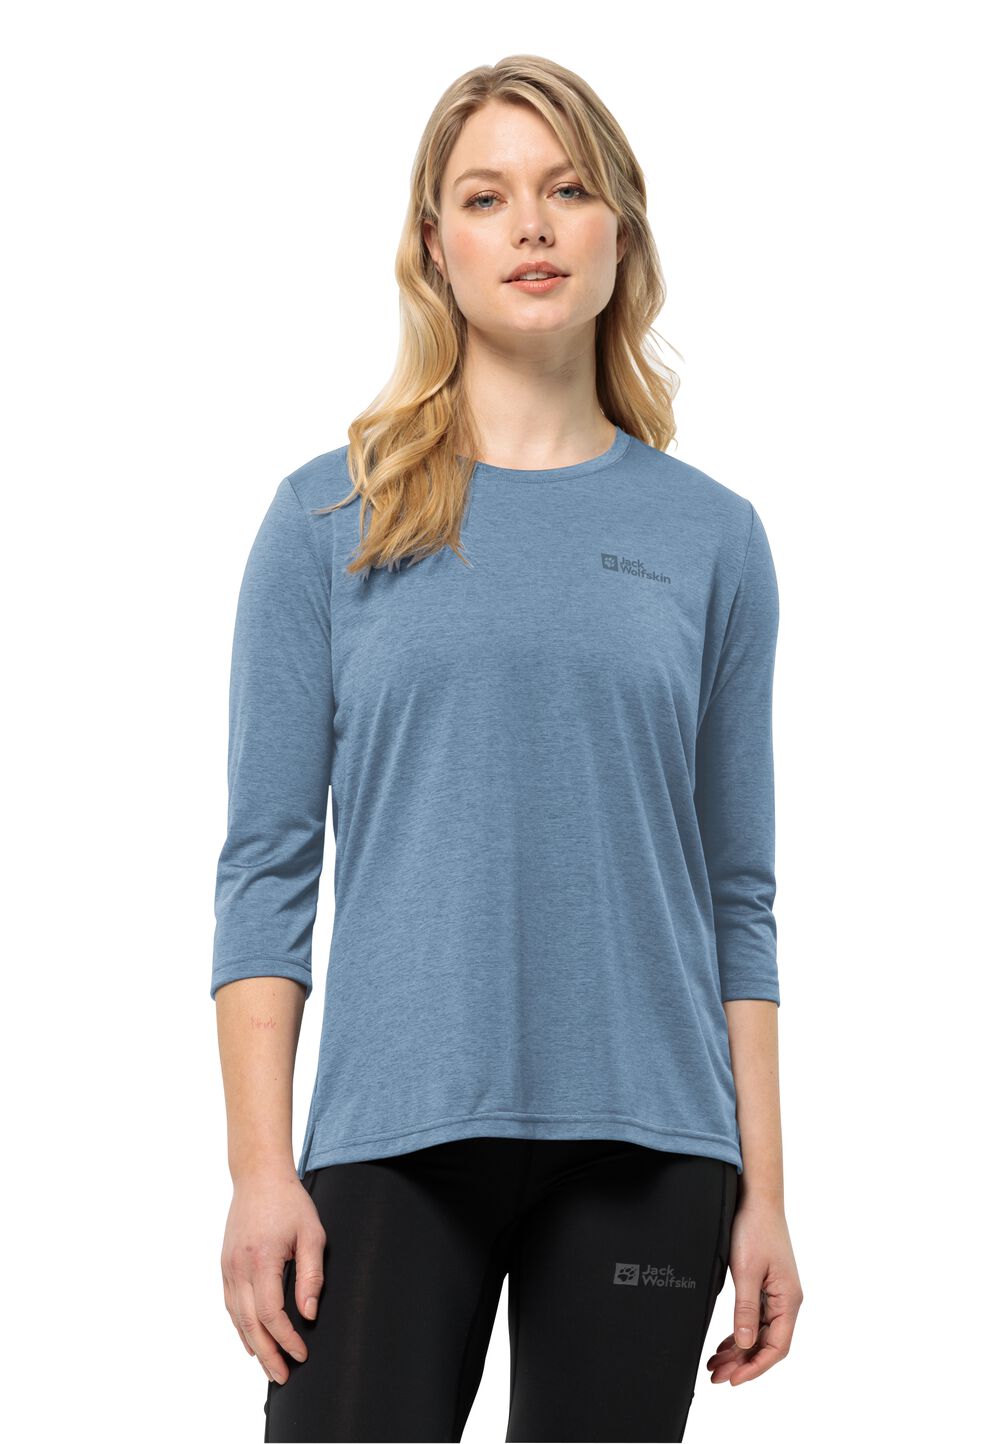 Jack Wolfskin Crosstrail 3 4 T-Shirt Women Functioneel shirt Dames L elemental blue elemental blue